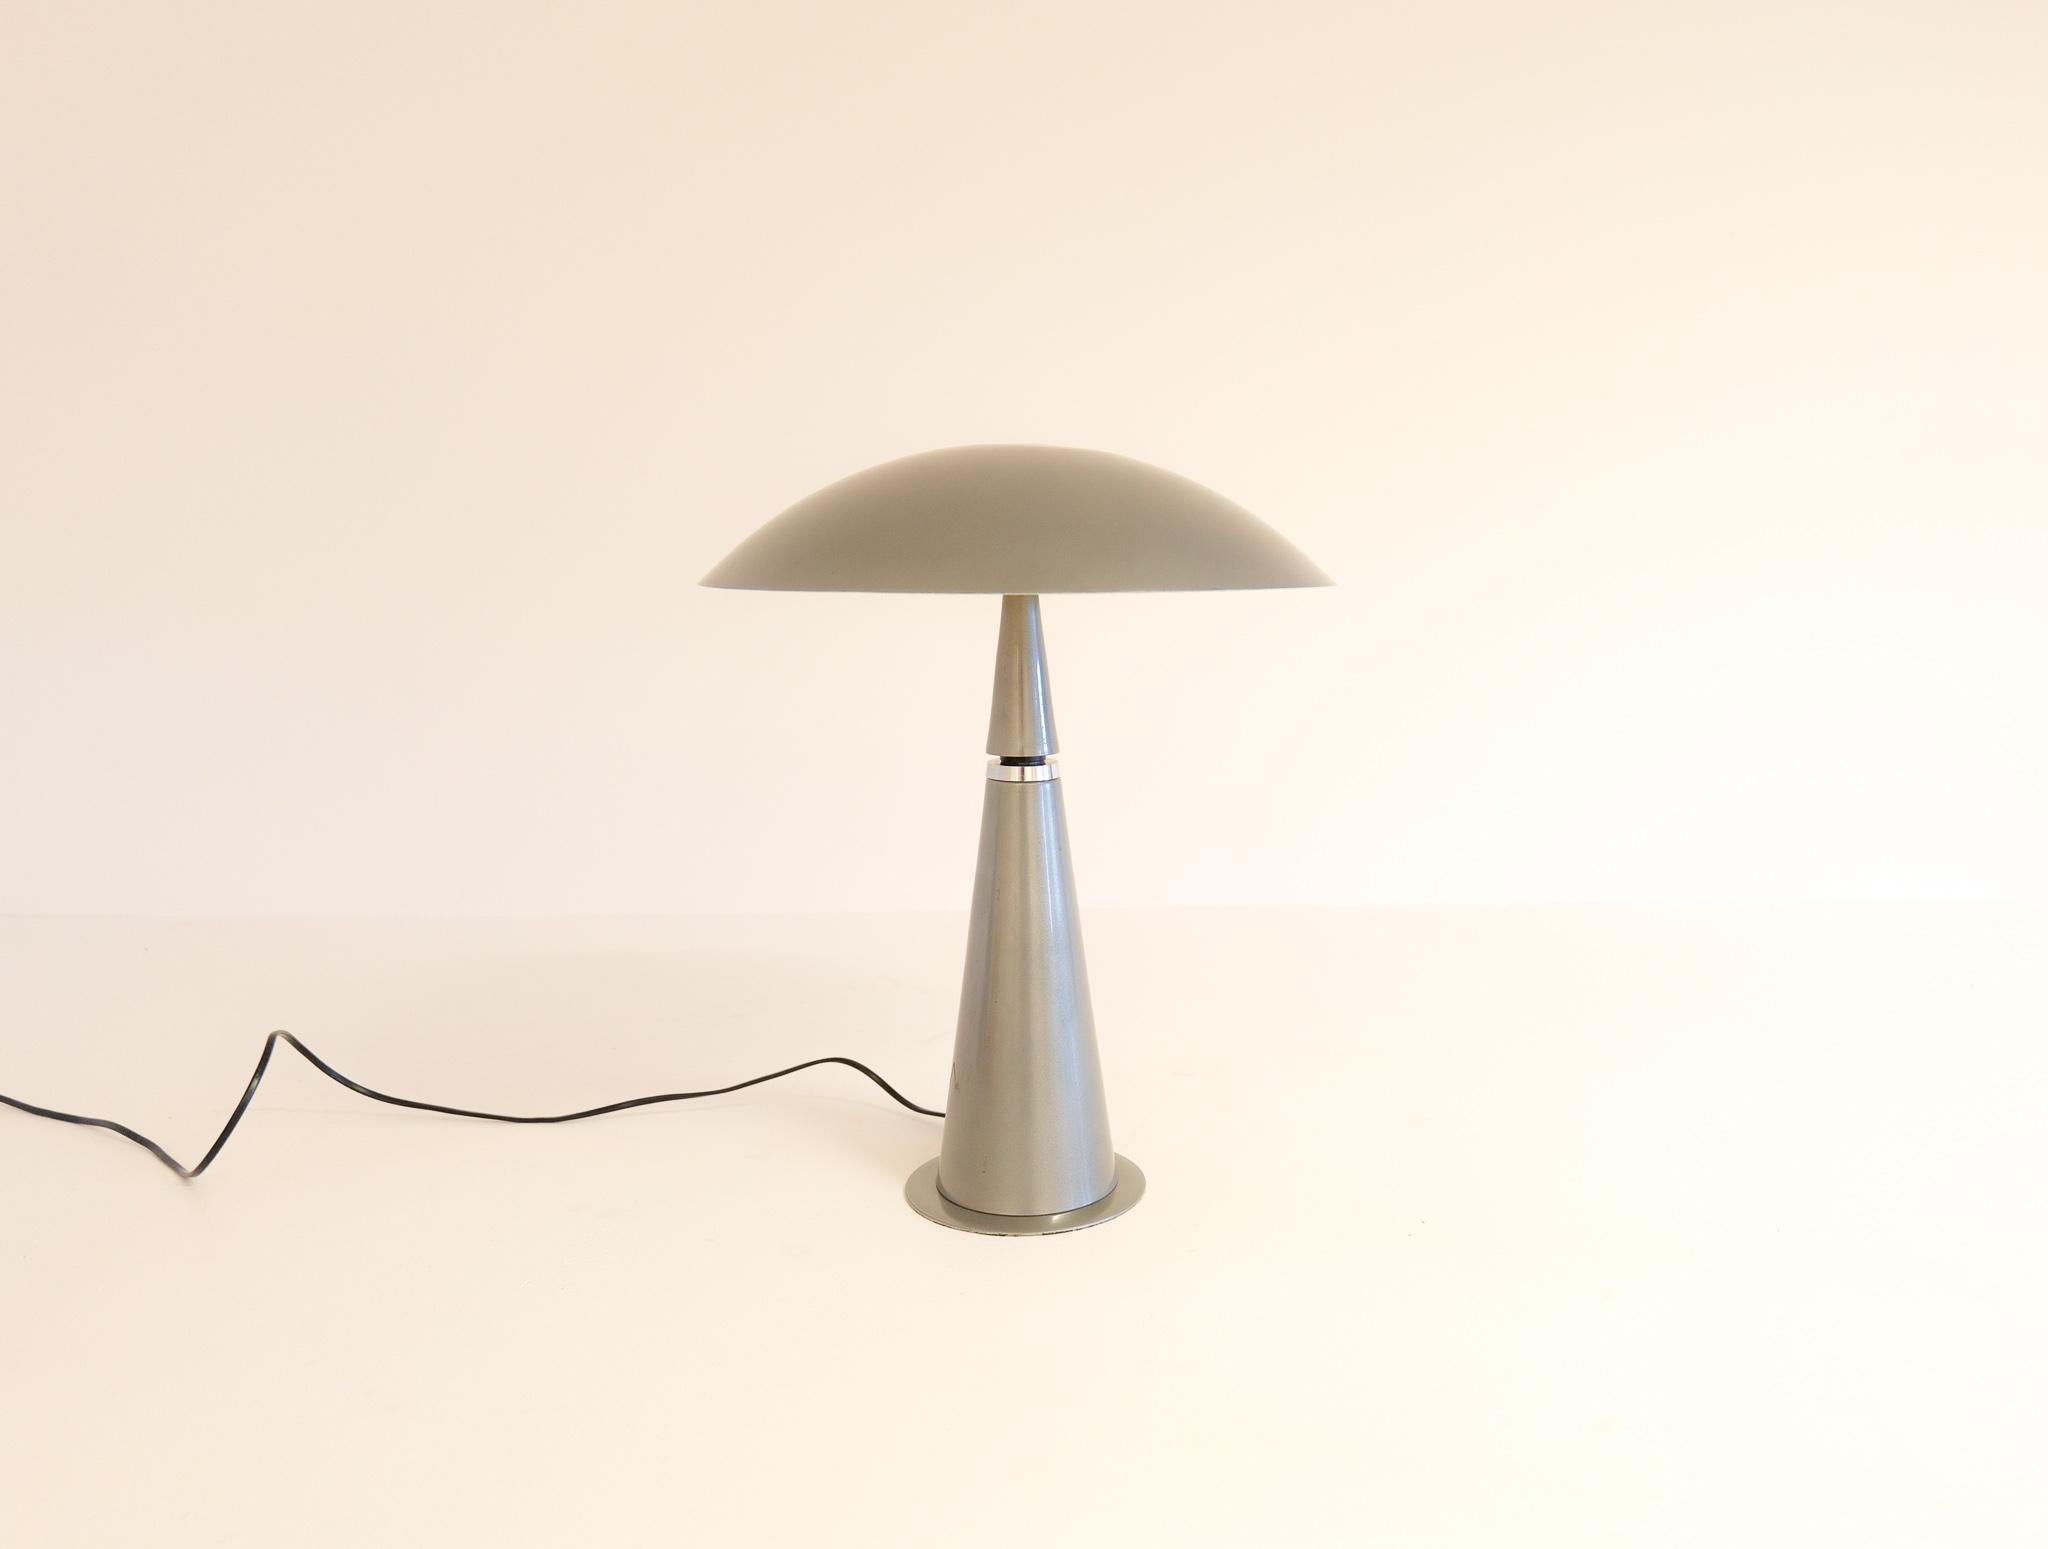 Cette magnifique lampe de table a été produite en France pour Aluminor dans les années 1990. Avec sa base en forme de cône et son abat-jour arrondi en forme de champignon, c'est une pièce au design futuriste qui donnera du relief à n'importe quel